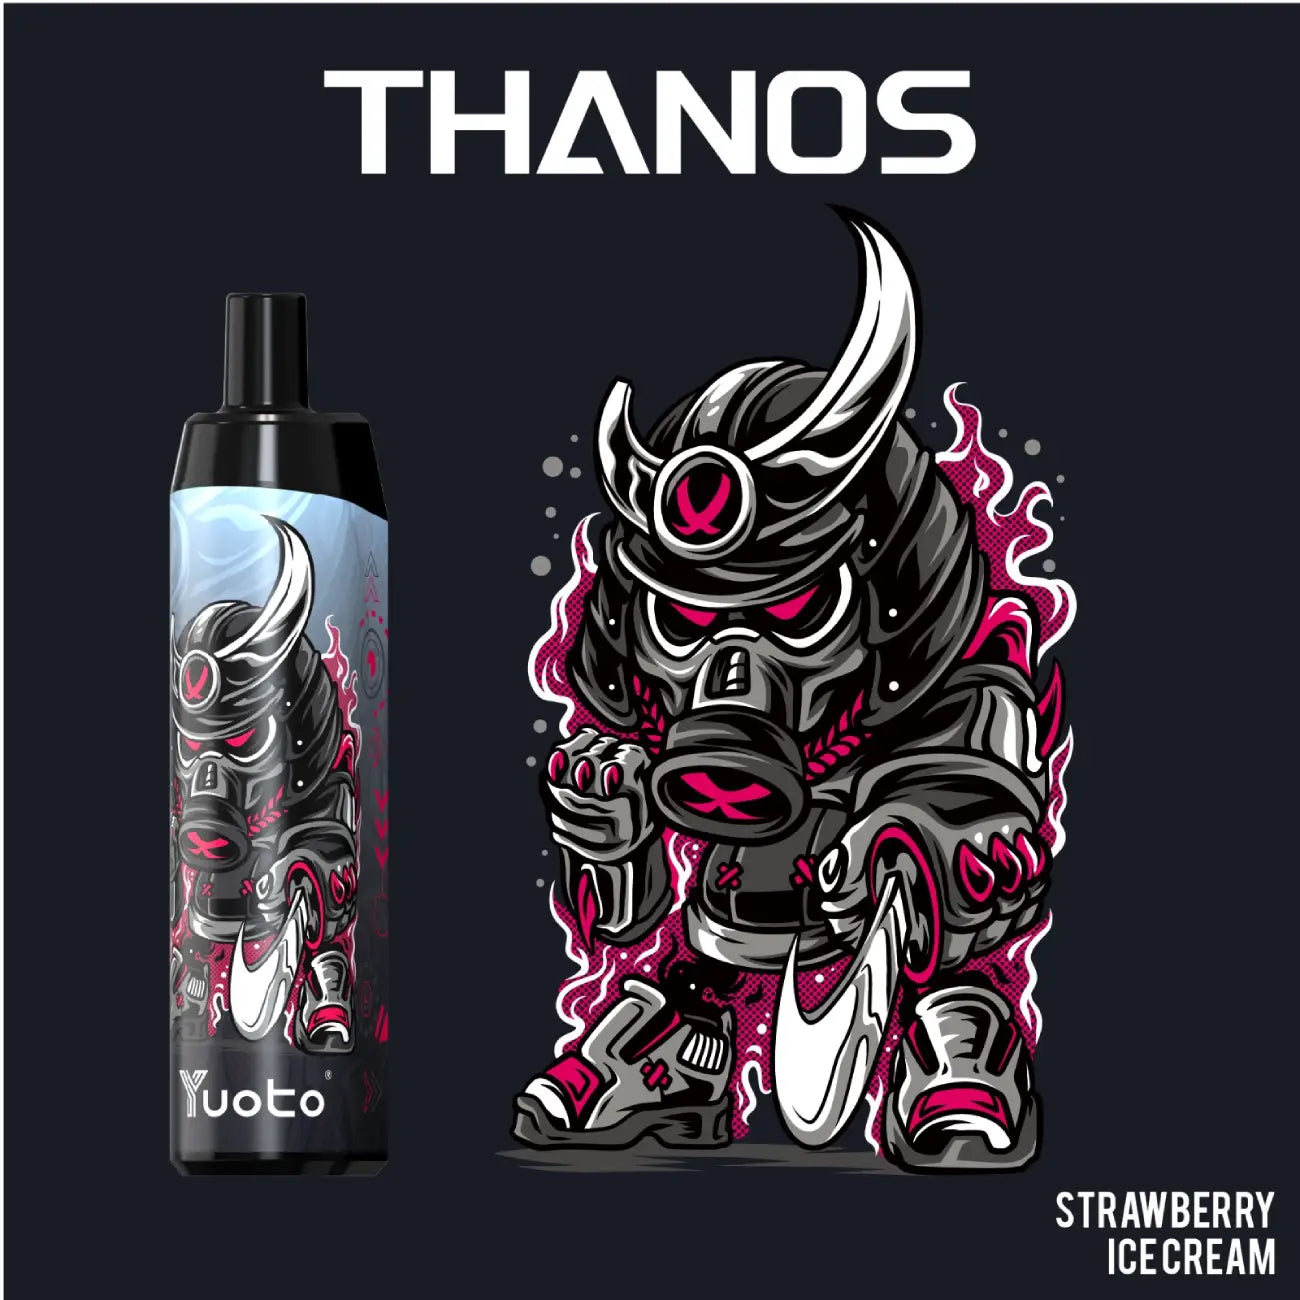 Thanos Strawberry Ice Cream